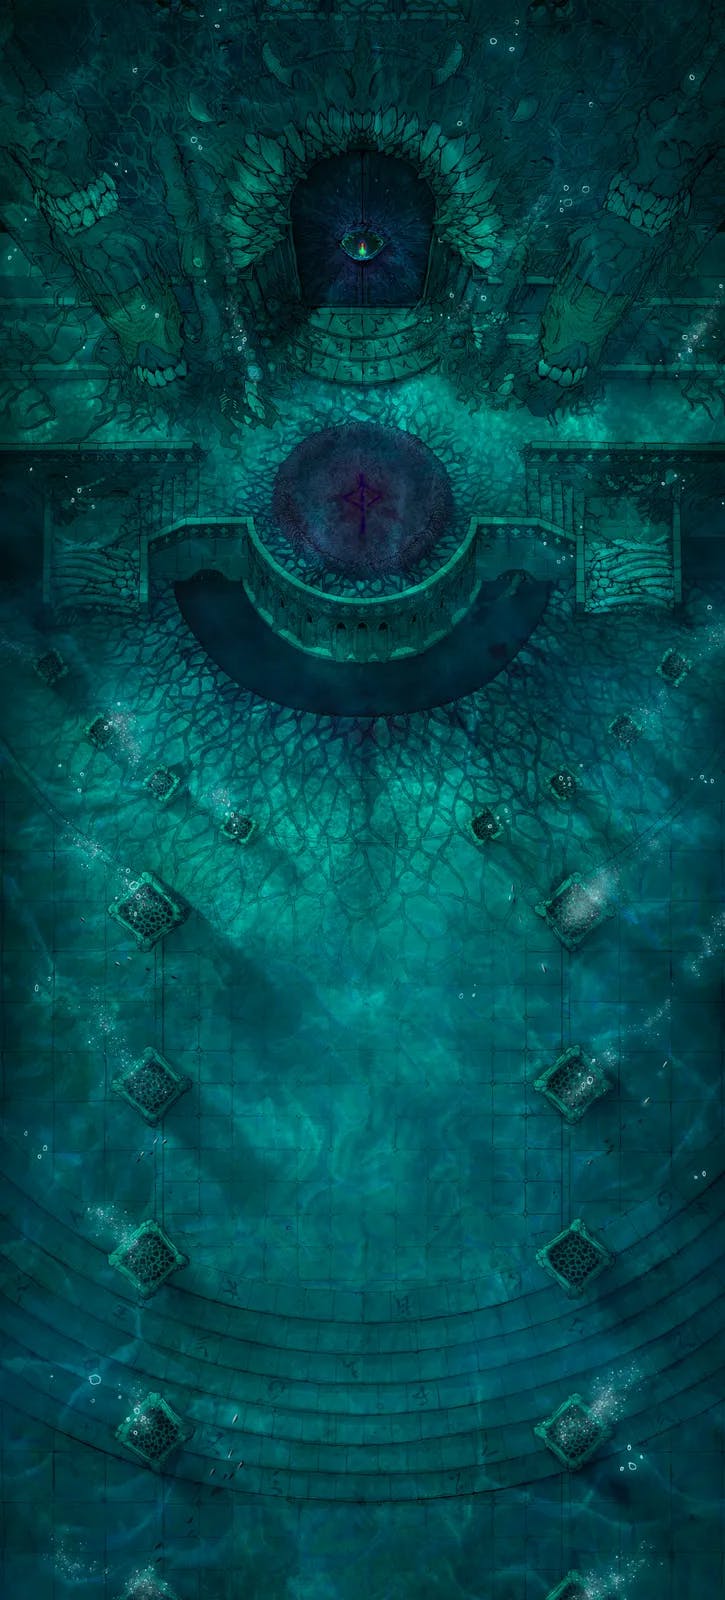 Nightmare Dragon Lair map, Underwater variant